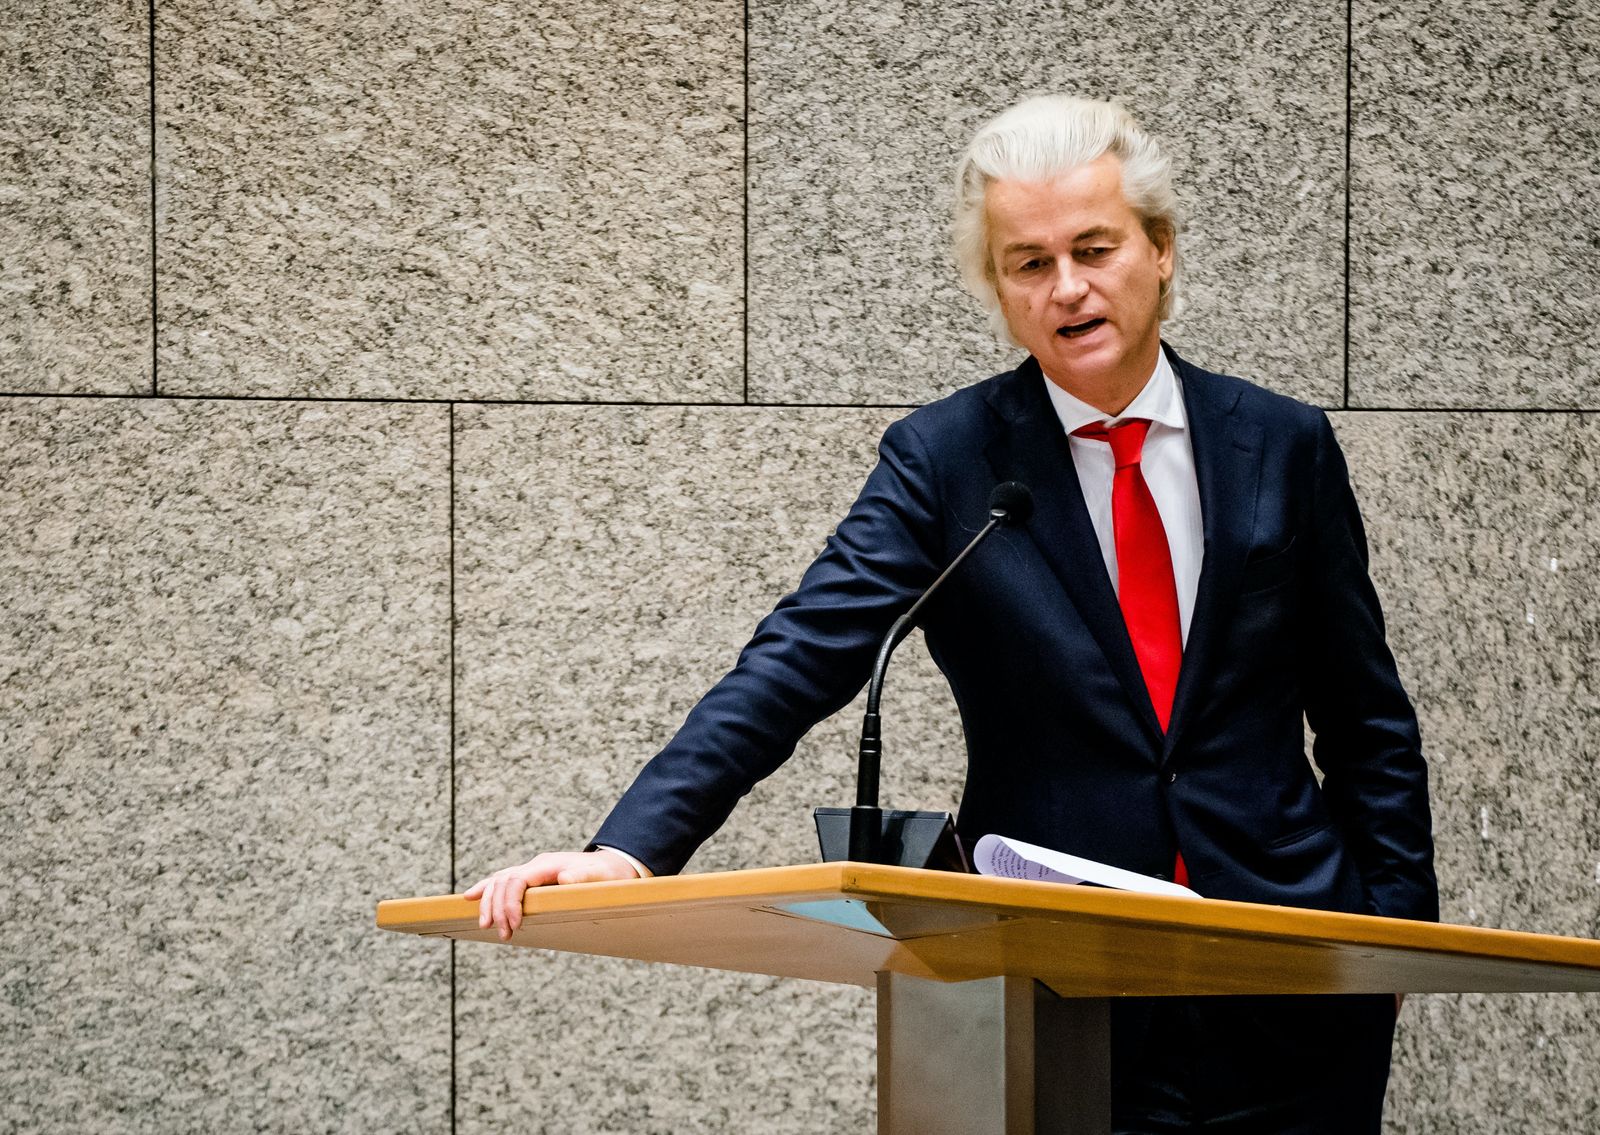 زعيم اليمين المتطرف الهولندي رئيس حزب 'الحرية' غيرت فيلدرز